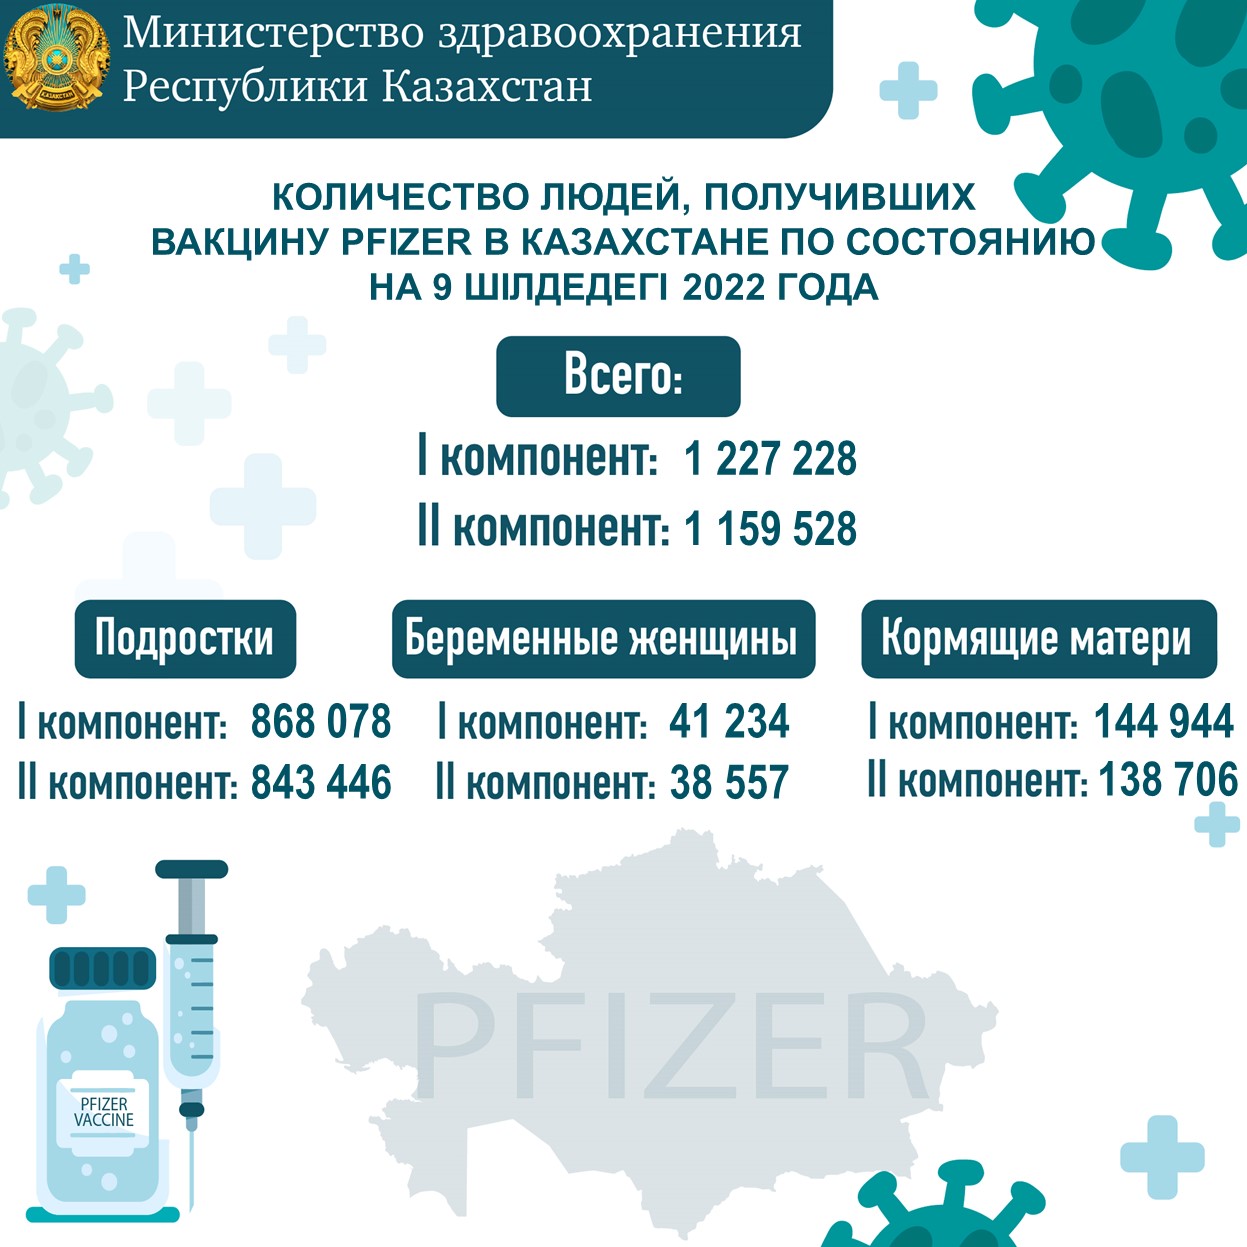 Количество людей, получивших вакцину Рfizer в Казахстане по состоянию на 9.07.2022 года